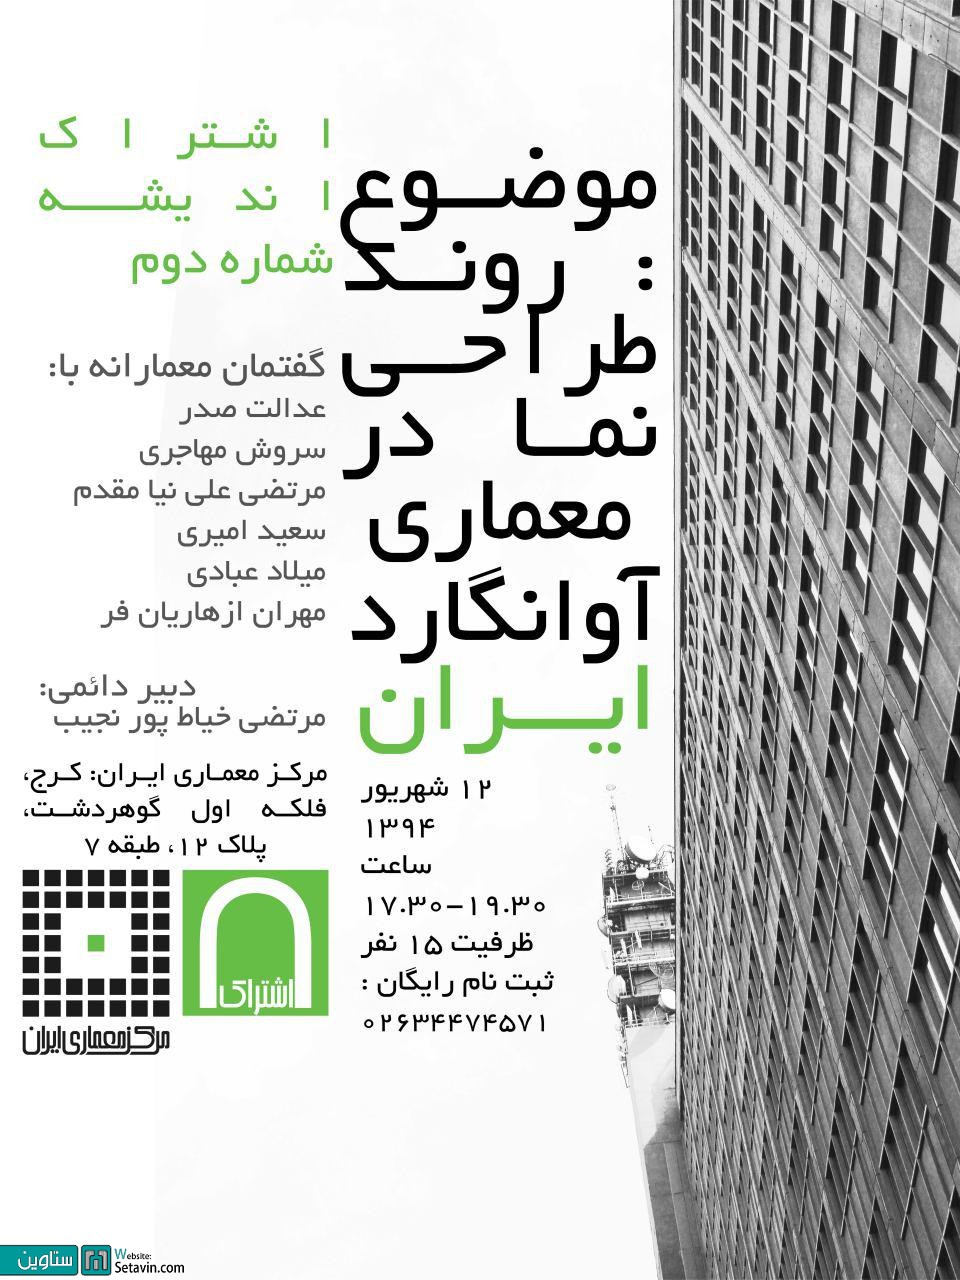 روند طراحی نمای ساختمان در معماری آوانگارد ایران